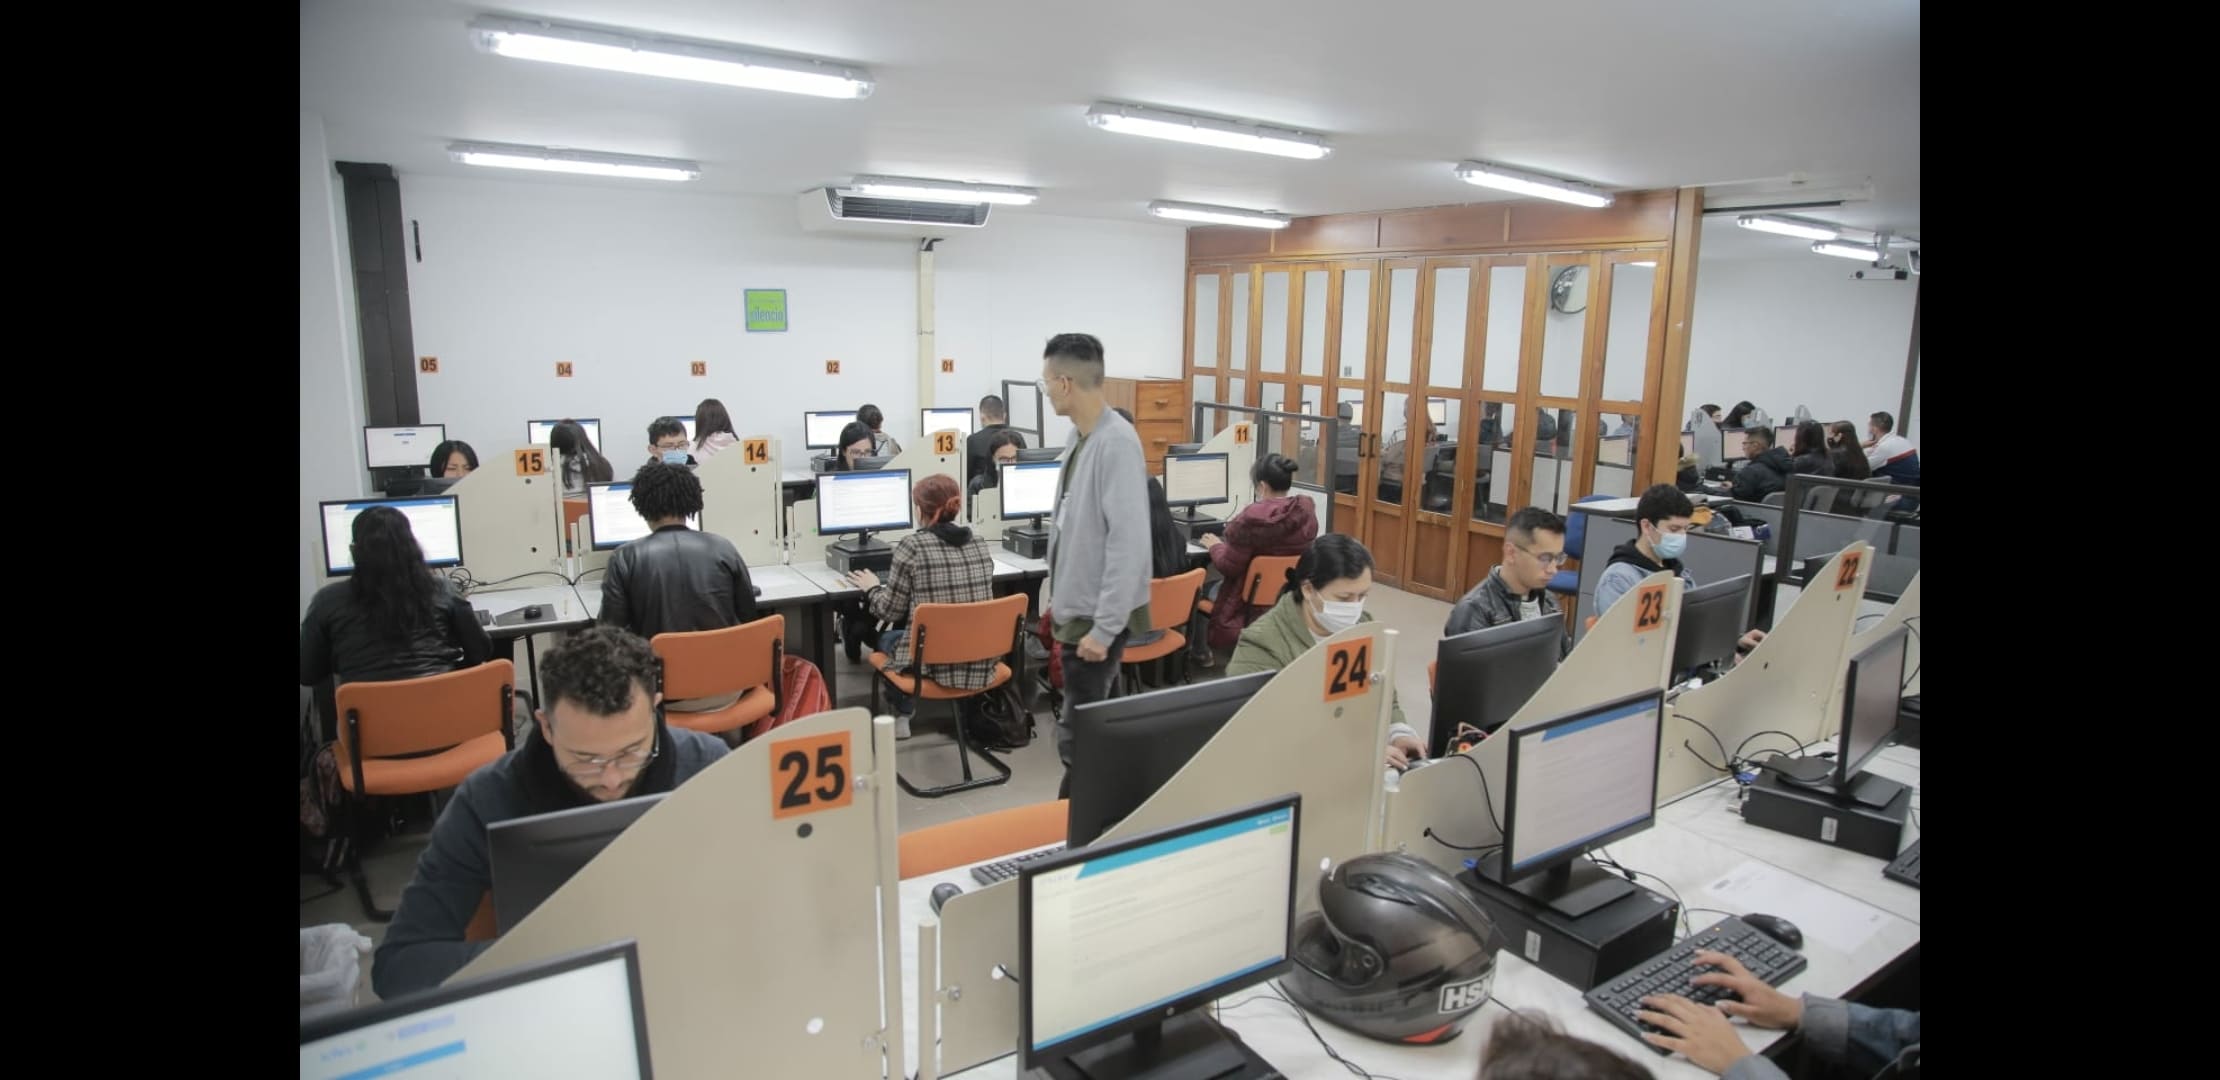 Estudiantes presentando examen en una sala de computadores